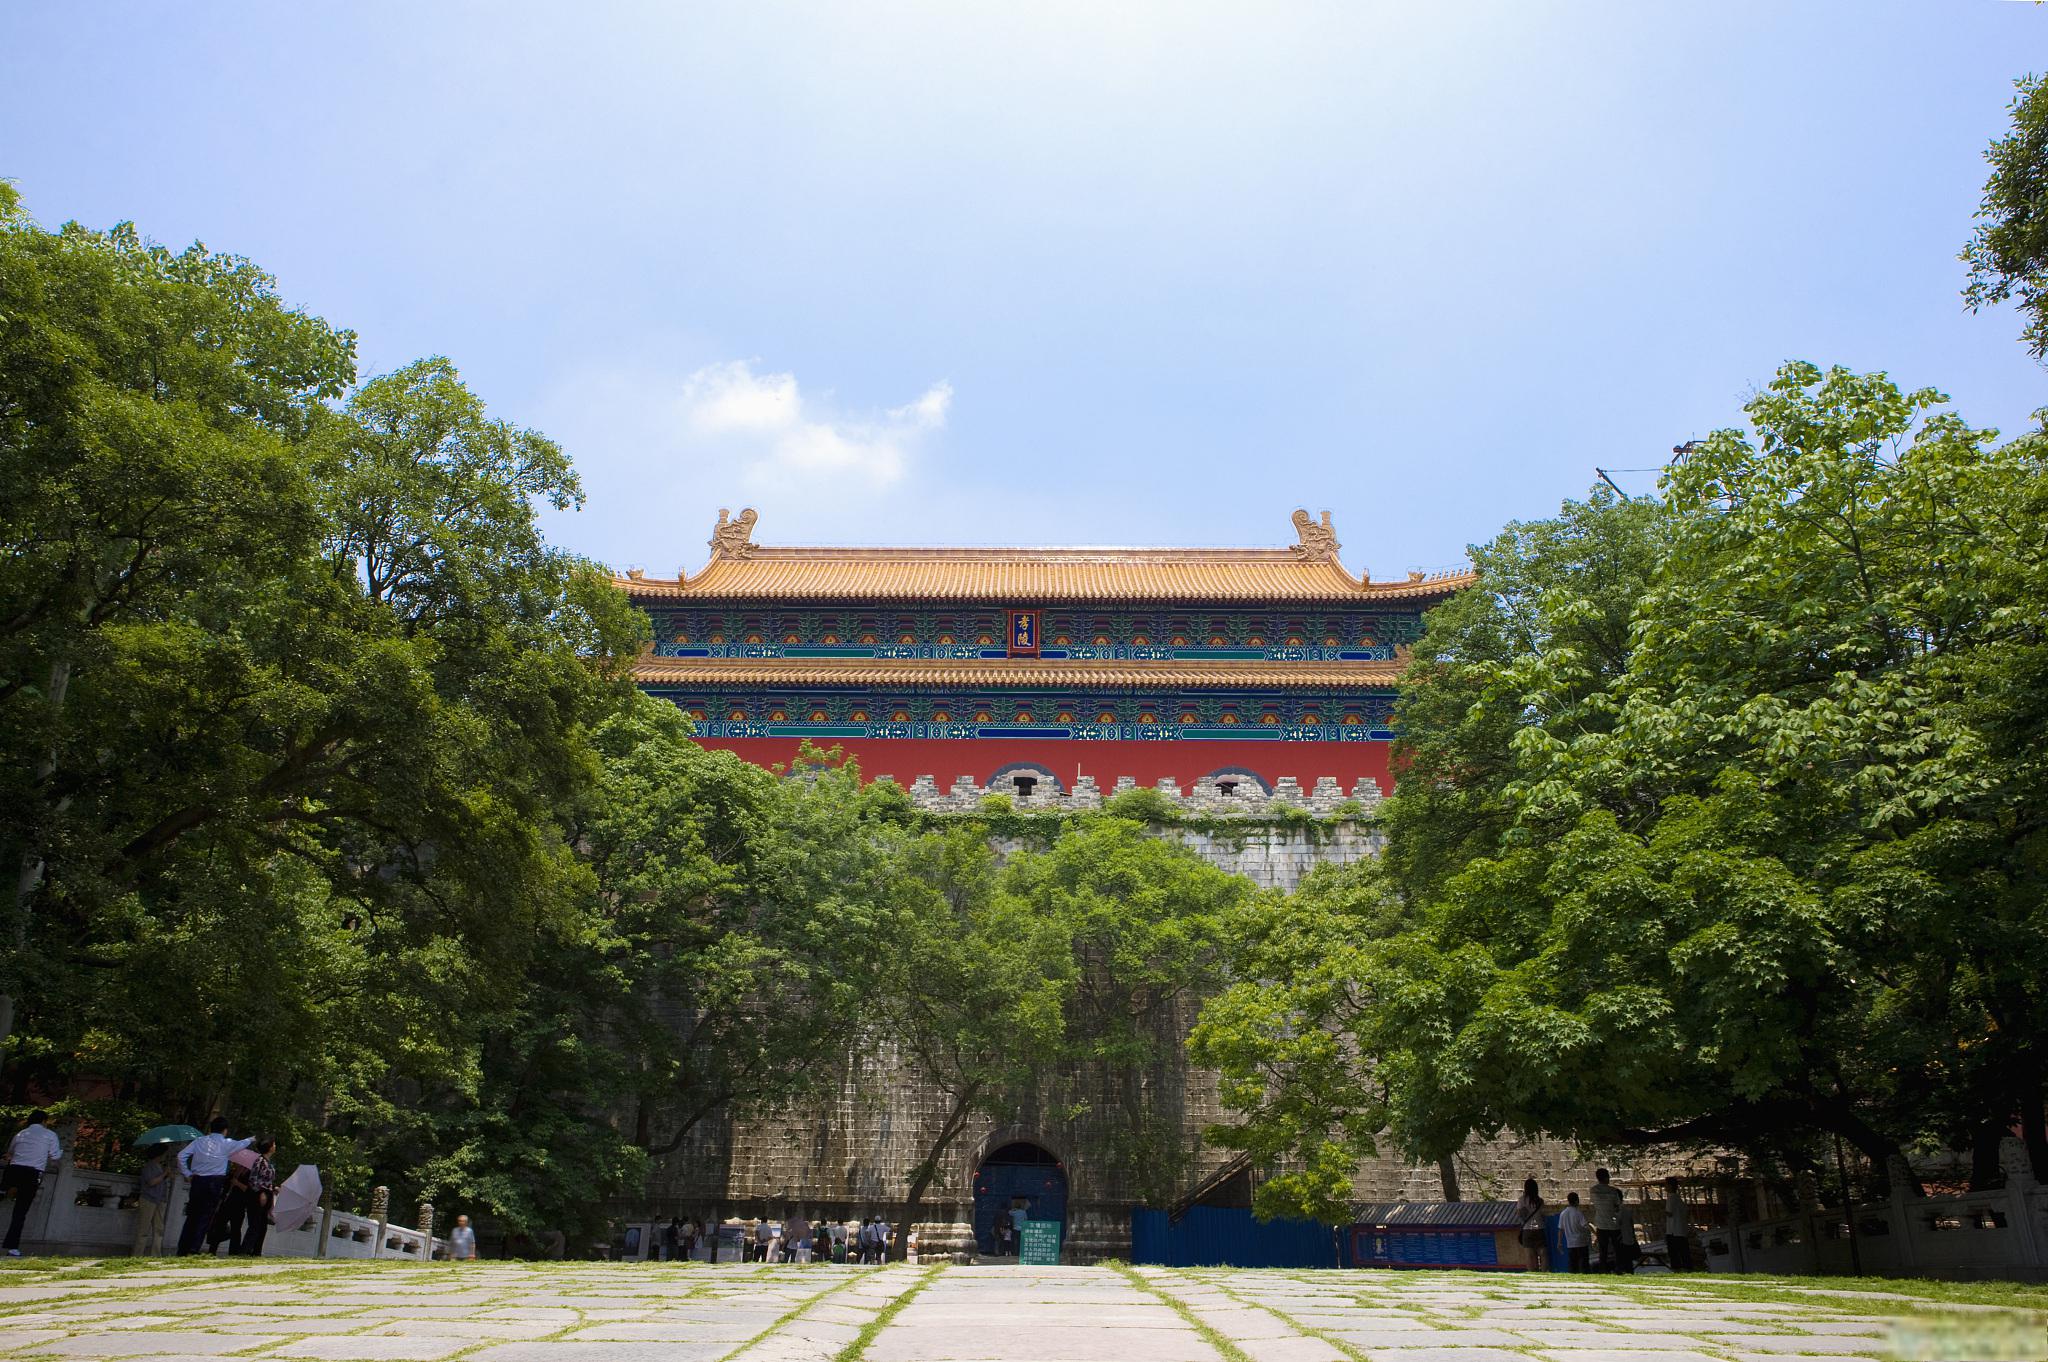 南京明孝陵游玩攻略 南京明孝陵是明清时期的重要文化遗产,位于南京市